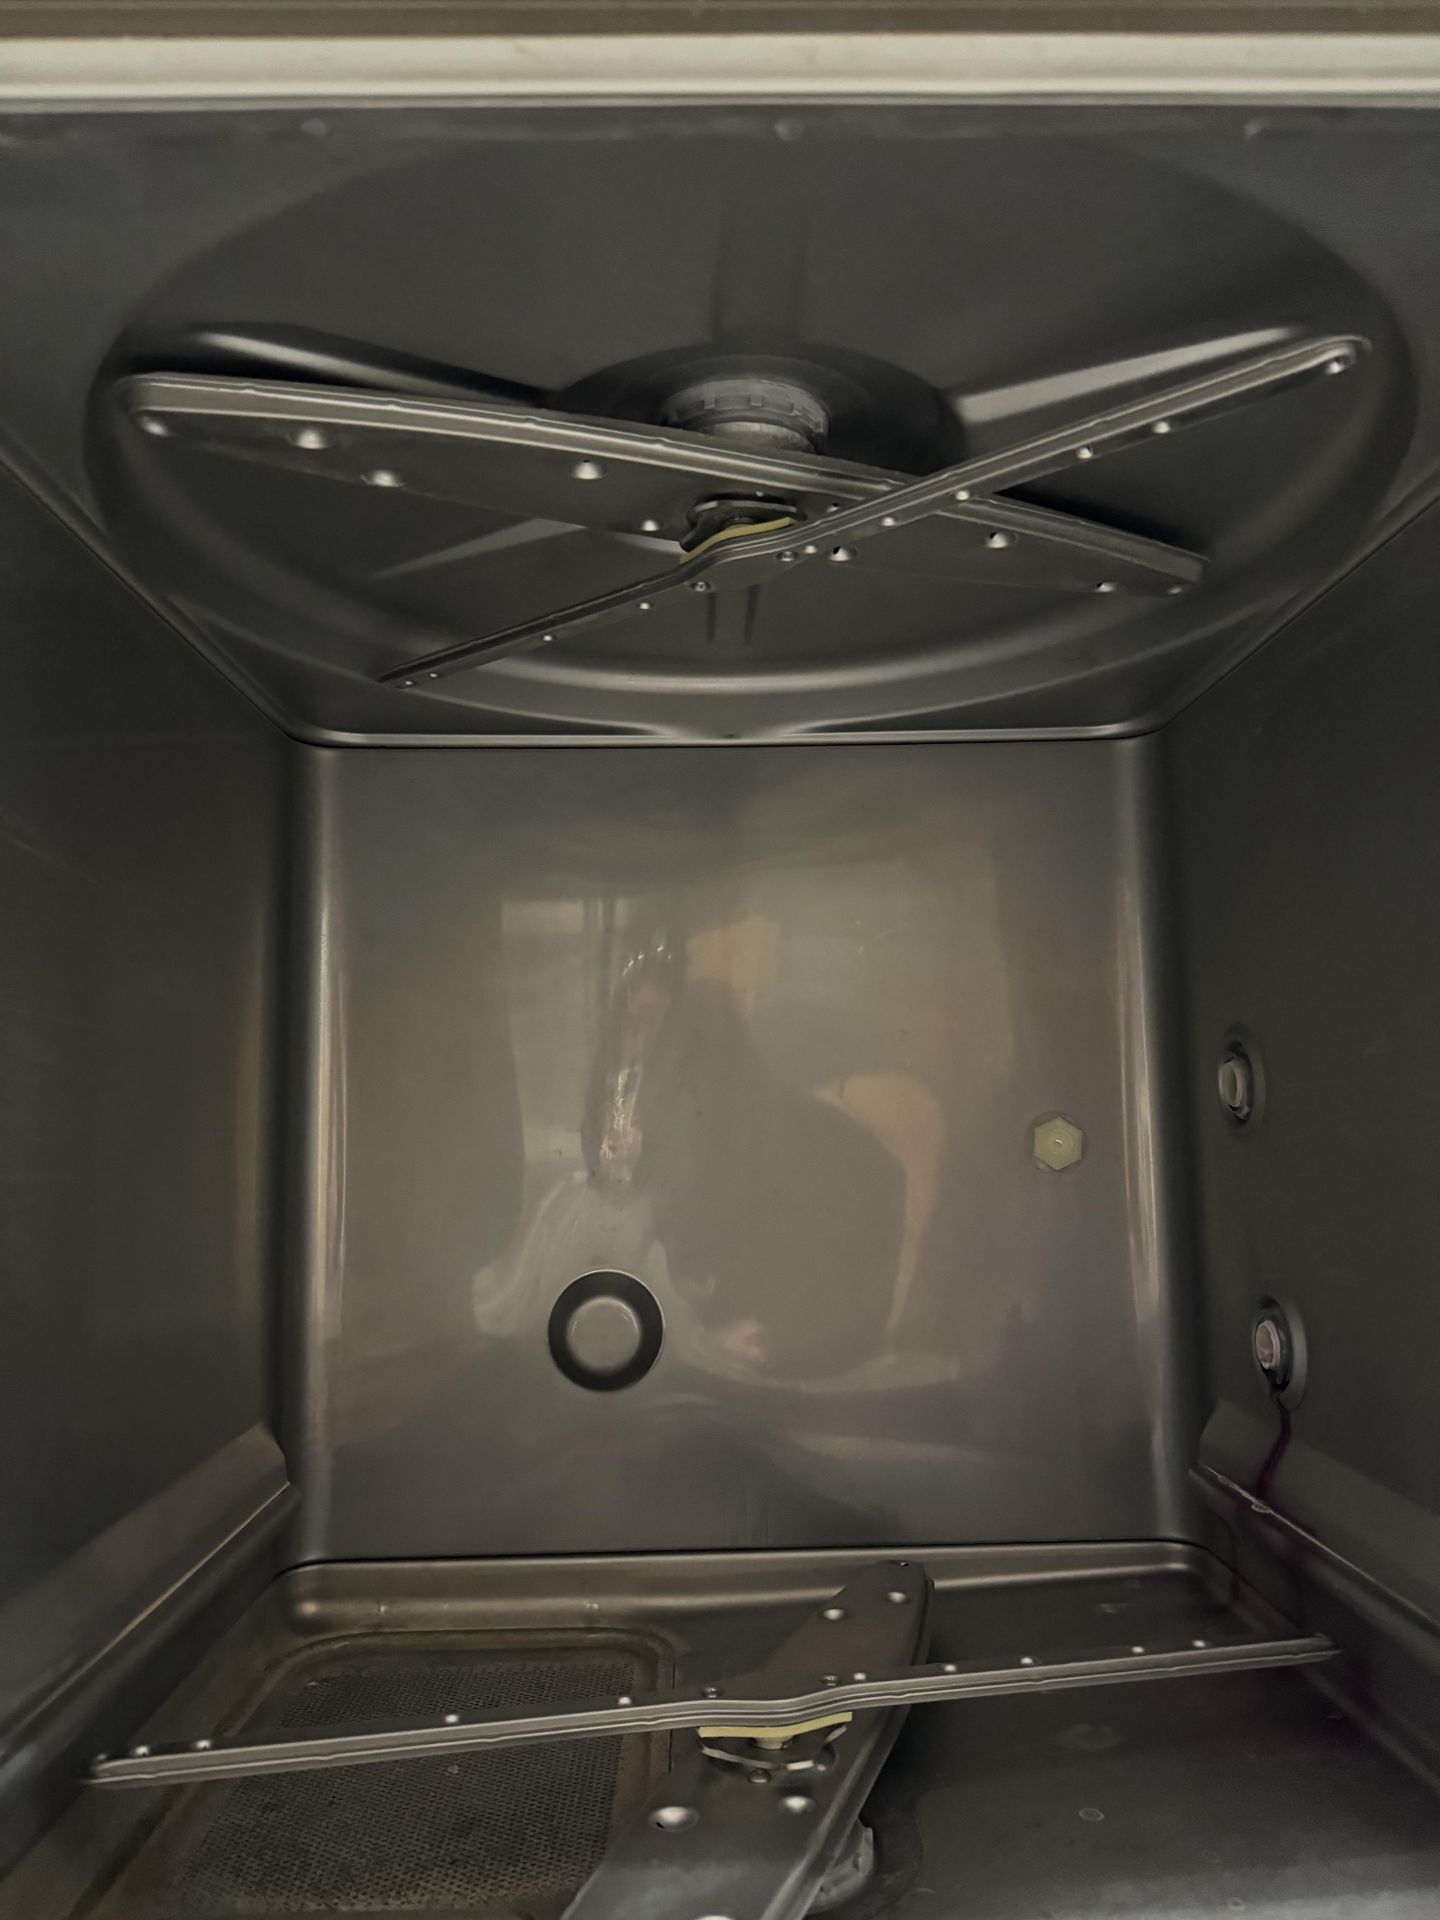 Hobart Under Counter Dishwasher Model LXEH-2 - Image 8 of 11